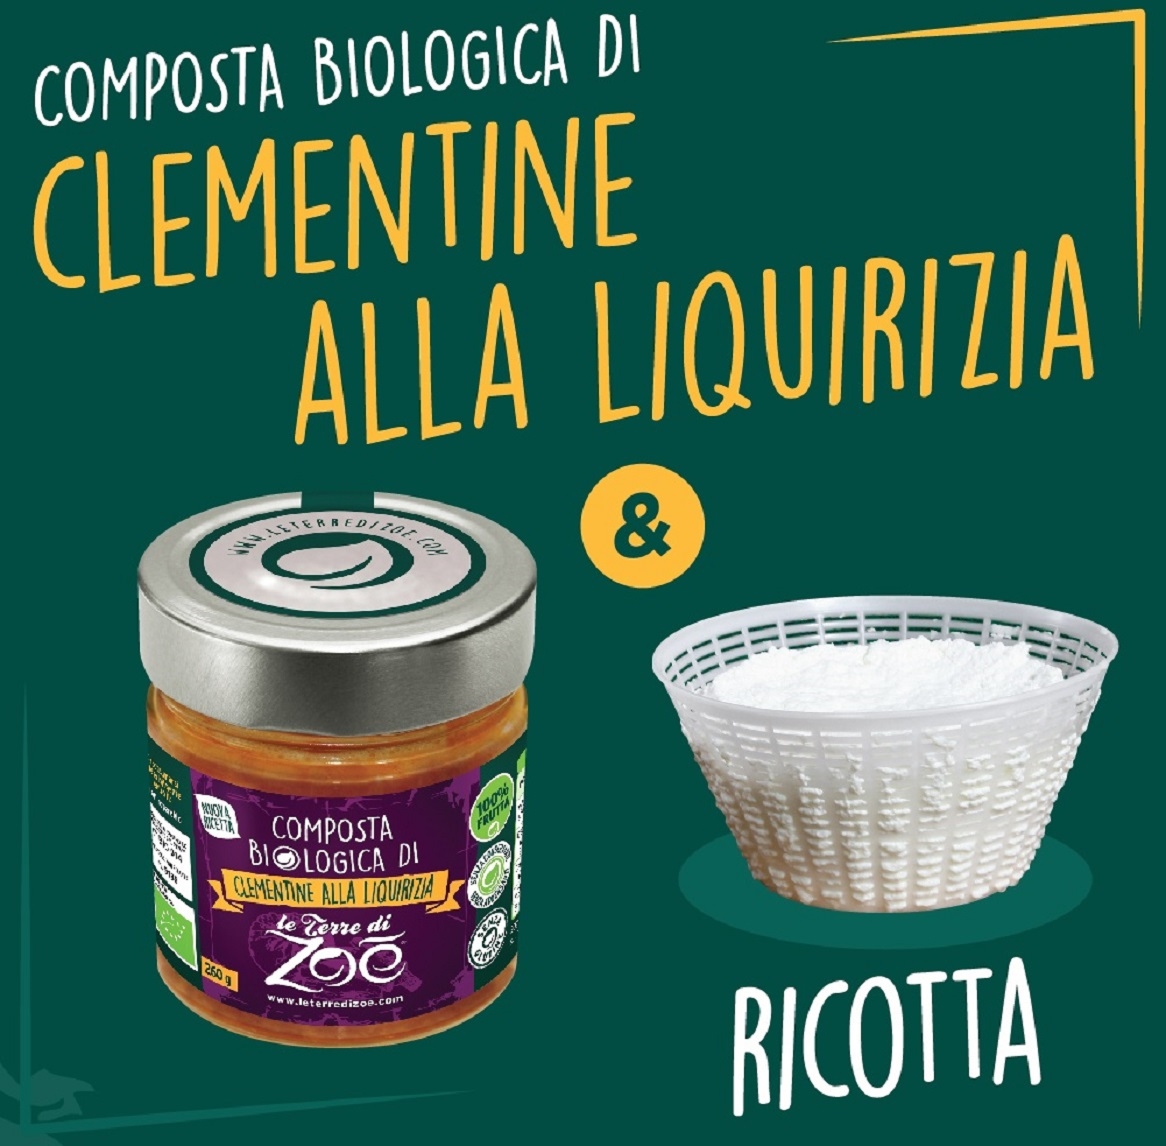 Composta biologica di Clementine e Liquirizia di Calabria 260g Le terre di zoè 4